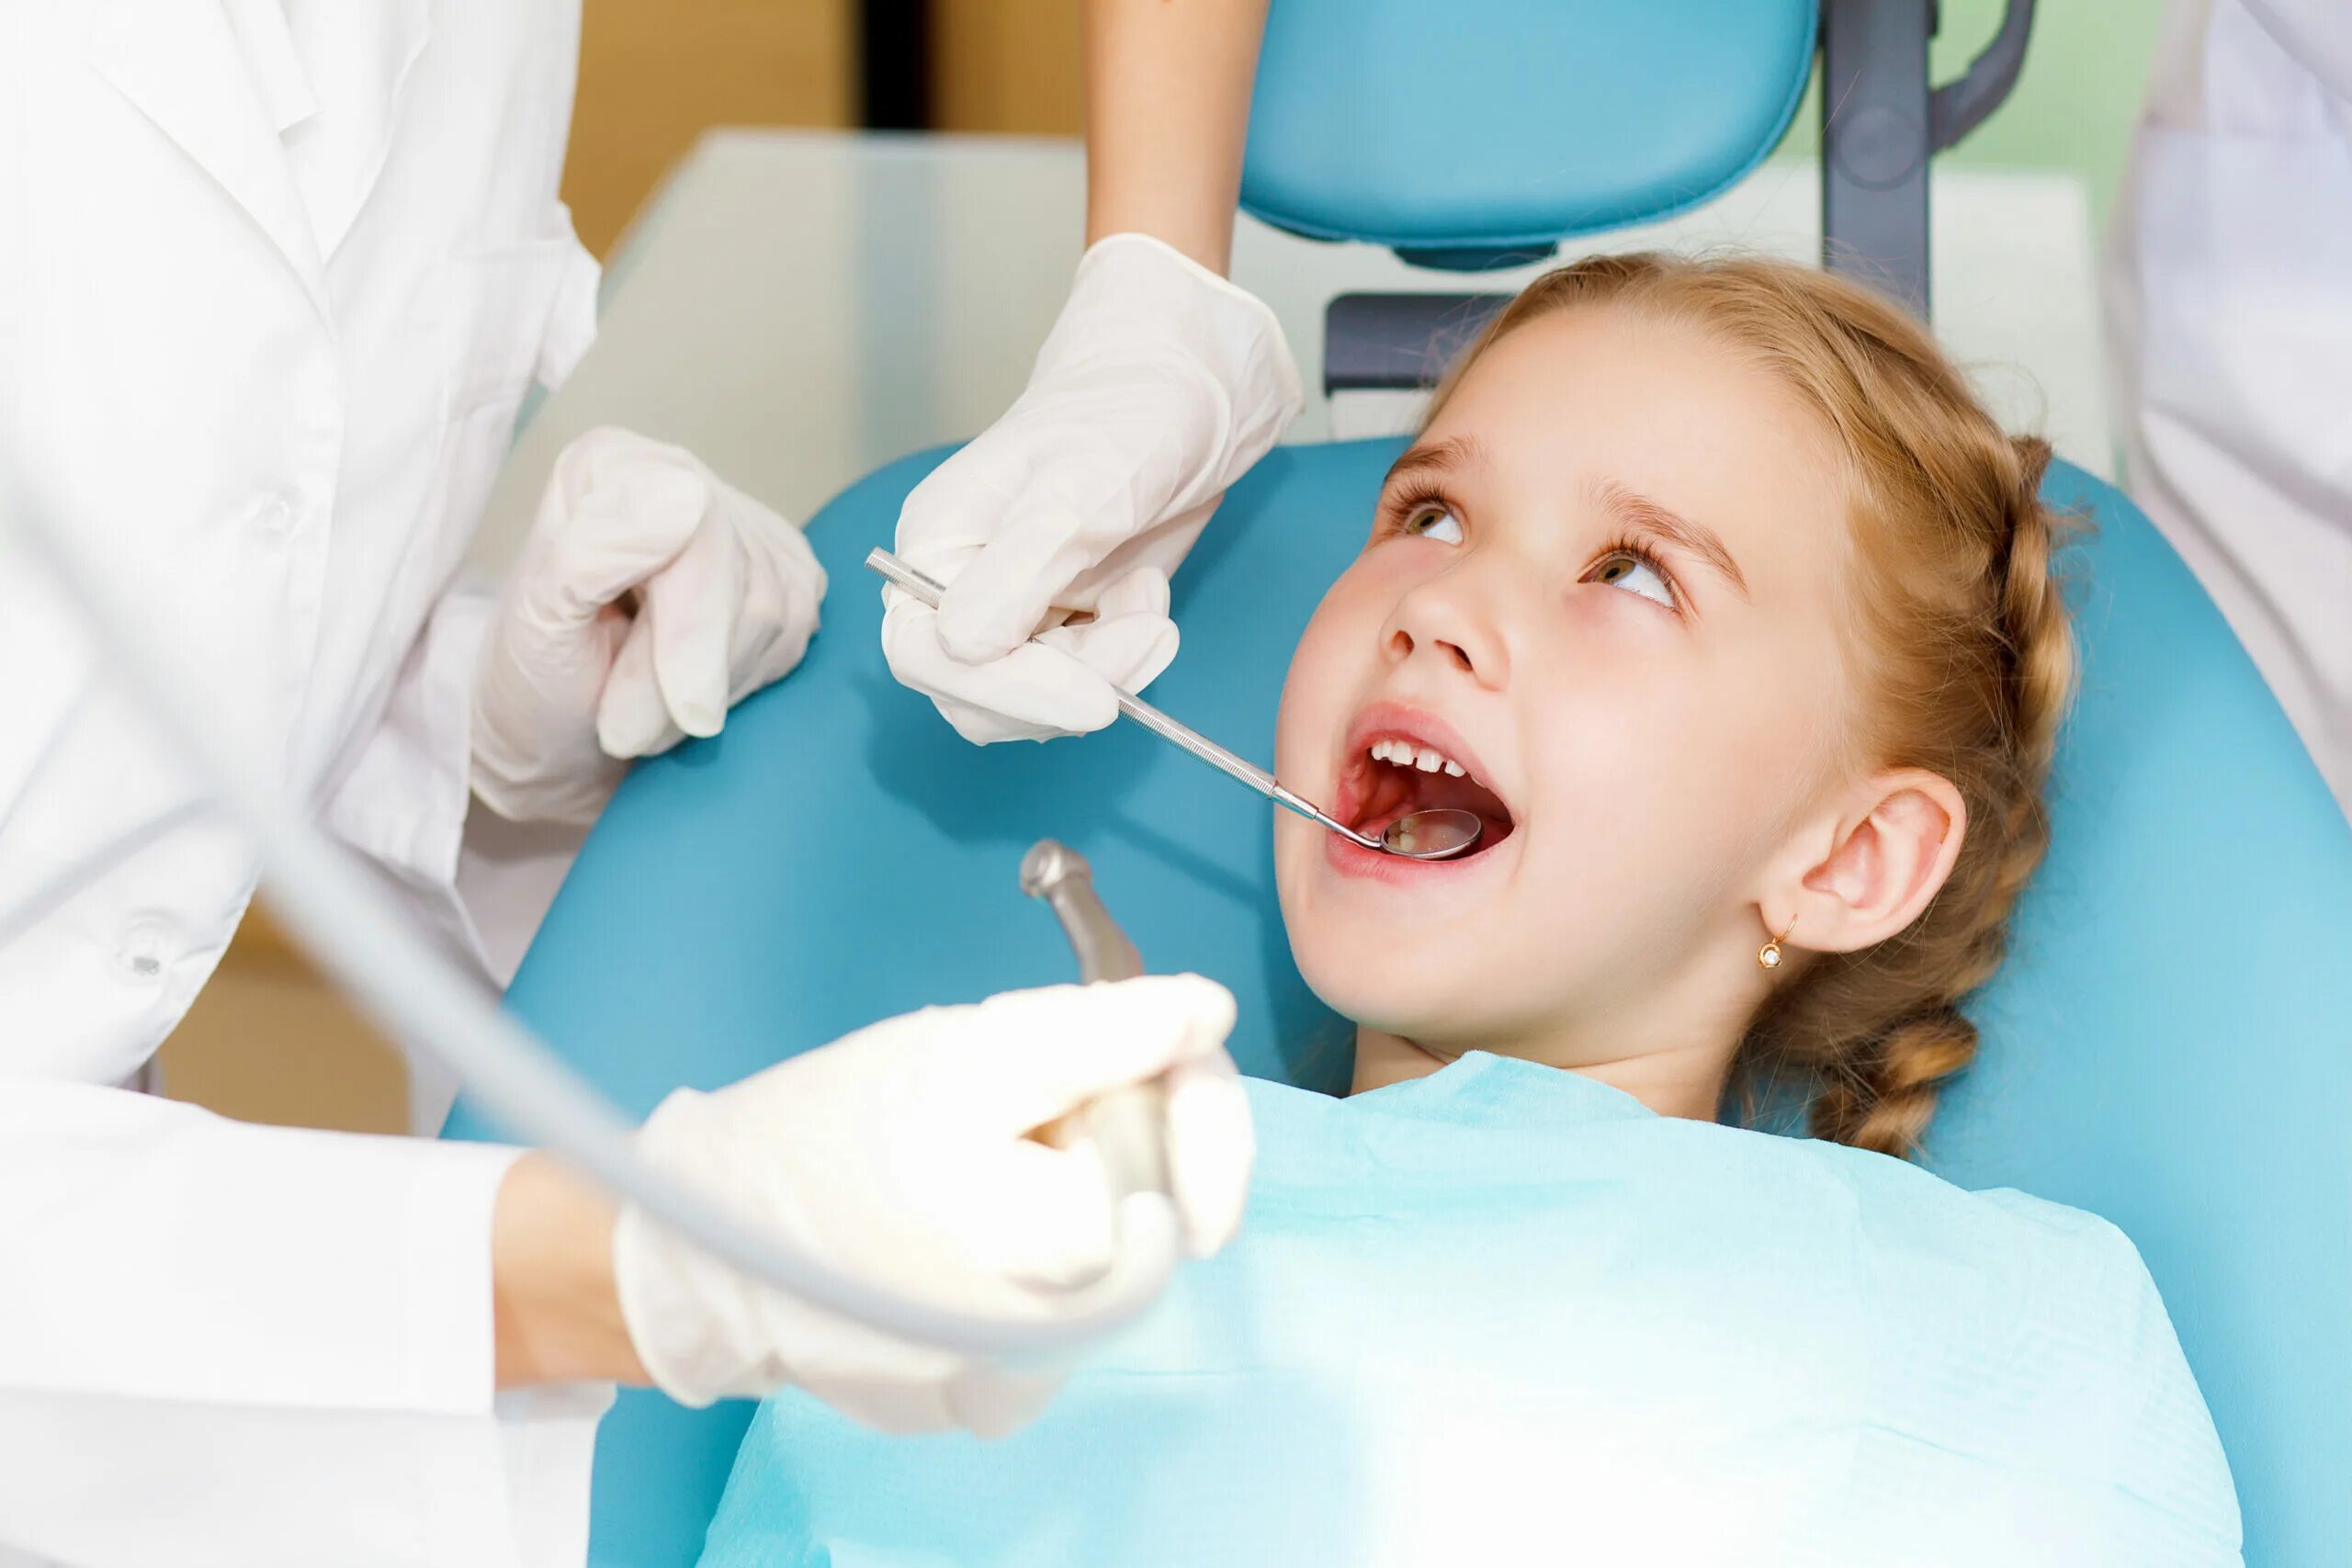 Санация полости рта это. Детская стоматология. Детский стоматолог Калининград. Детская стоматология PNG. Калининград детская стоматология около 56 школы.